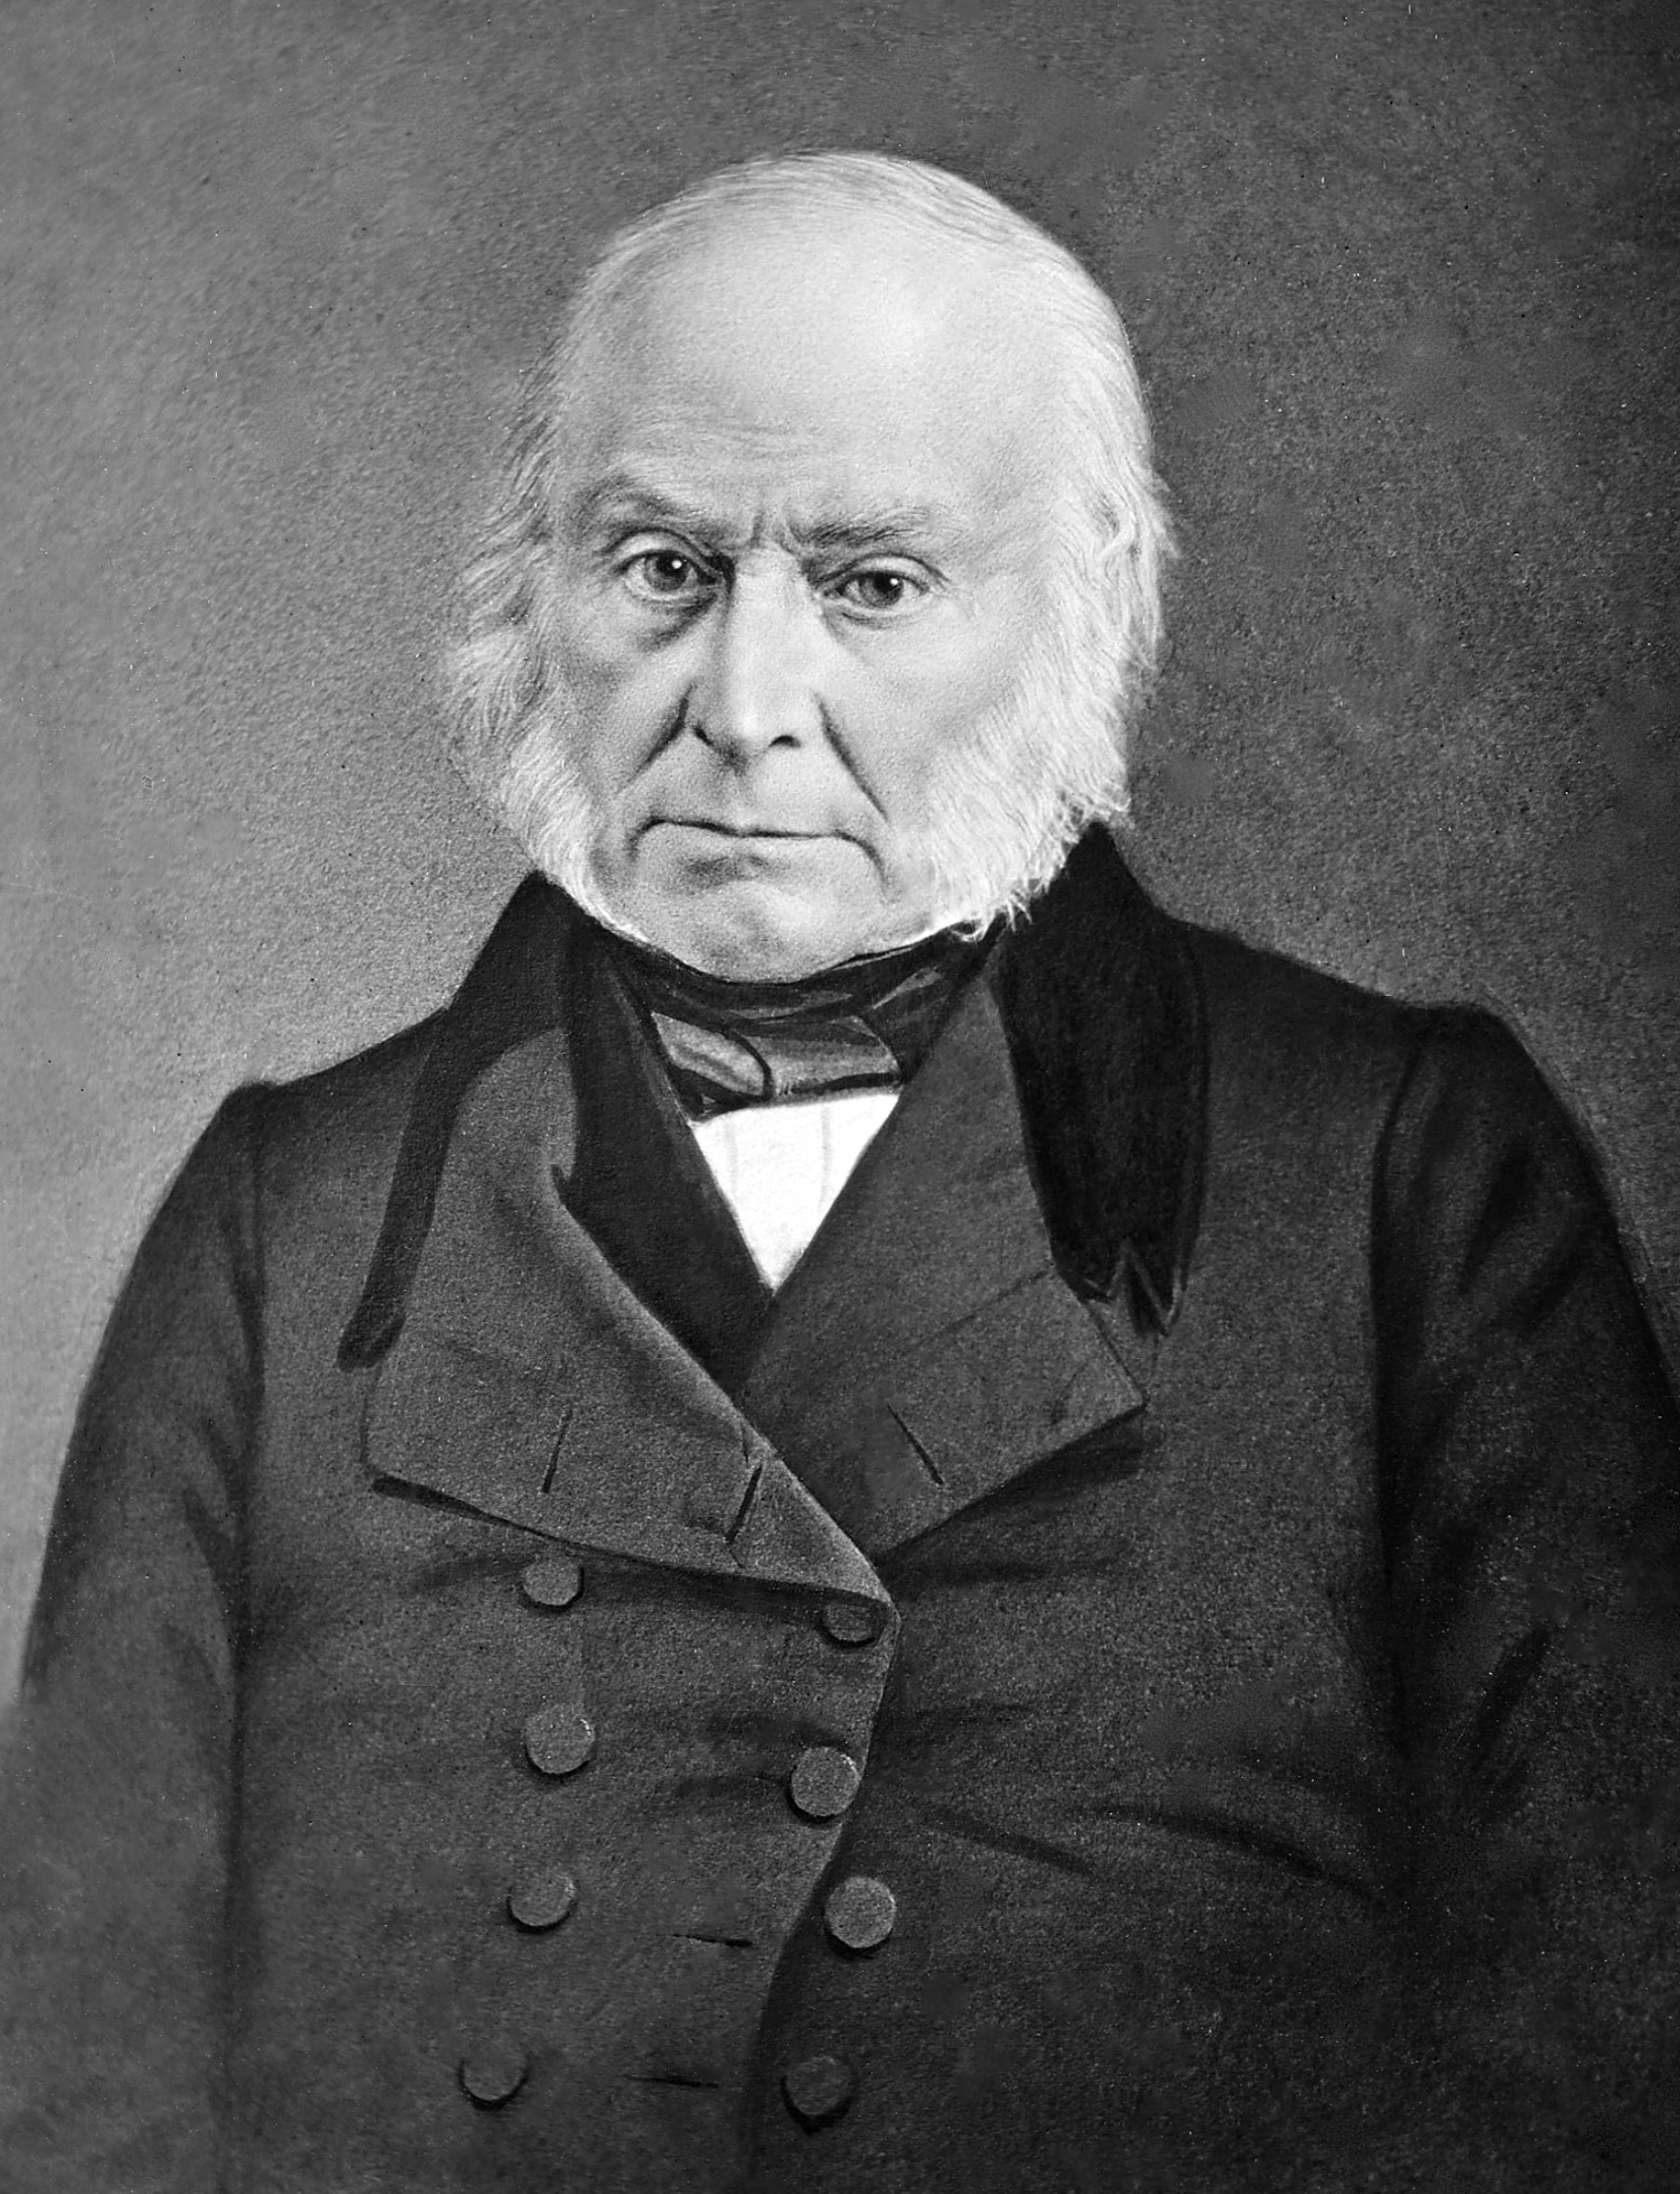 Photo of John Quincy Adams between 1843-1848